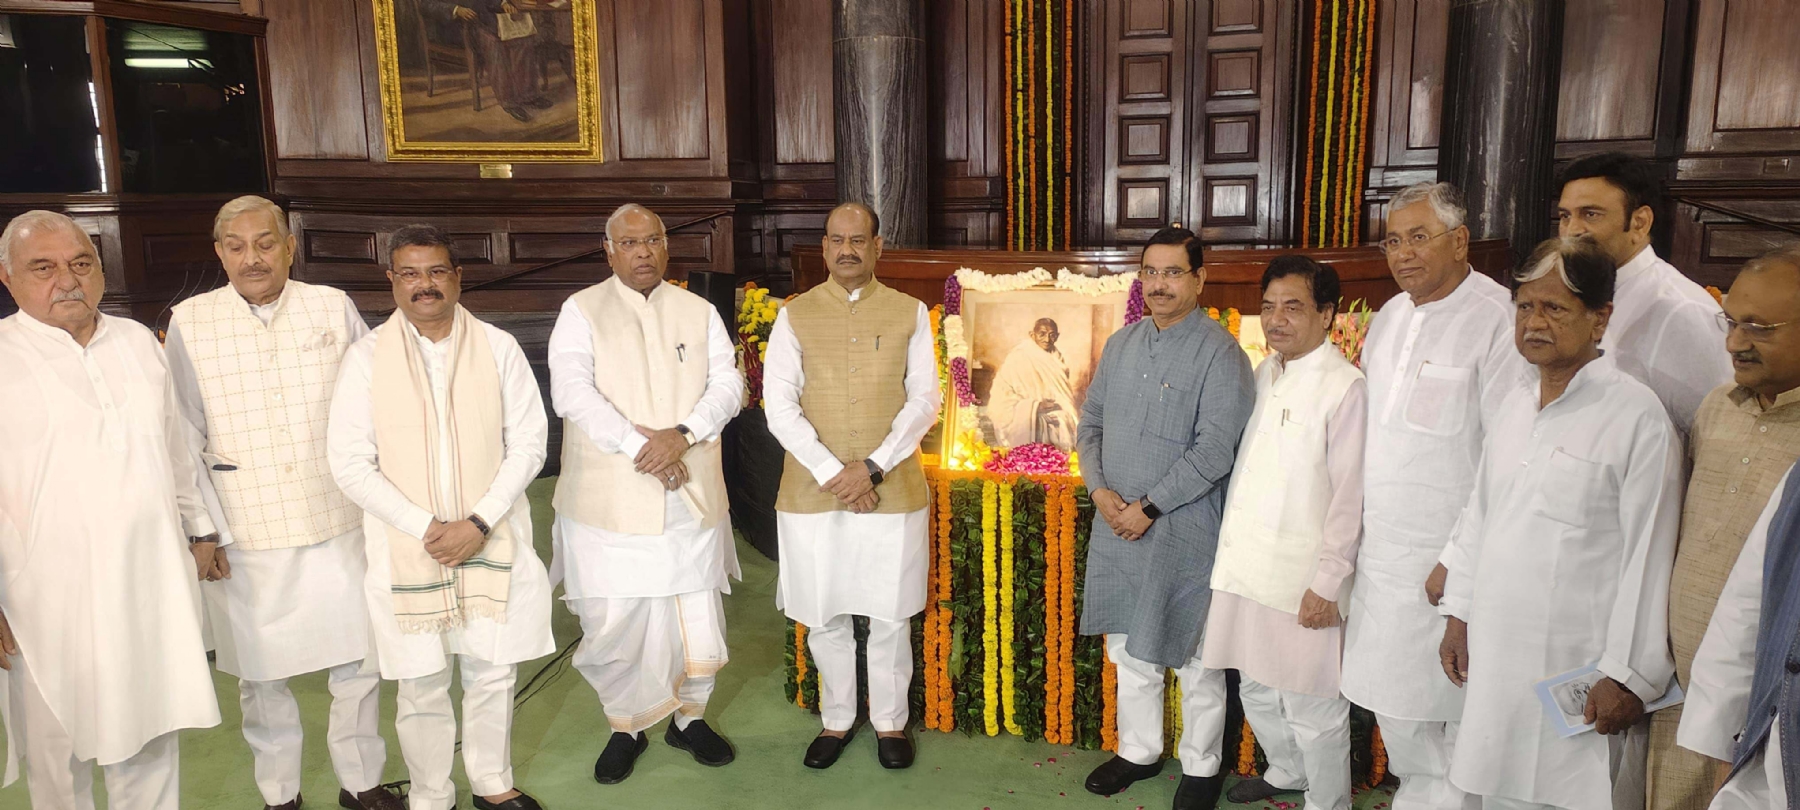 लोकसभा अध्यक्ष ओम बिरला ने संविधान सदन के सेंट्रल हॉल में महात्मा गांधी को उनकी जयंती पर श्रद्धांजलि देने से पहले कांग्रेस अध्यक्ष मल्लिकार्जुन खंगरगे के साथ शुभकामनाओं का आदान-प्रदान किया। हिन्दुस्थान समाचार फोटो गणेश बिष्ट